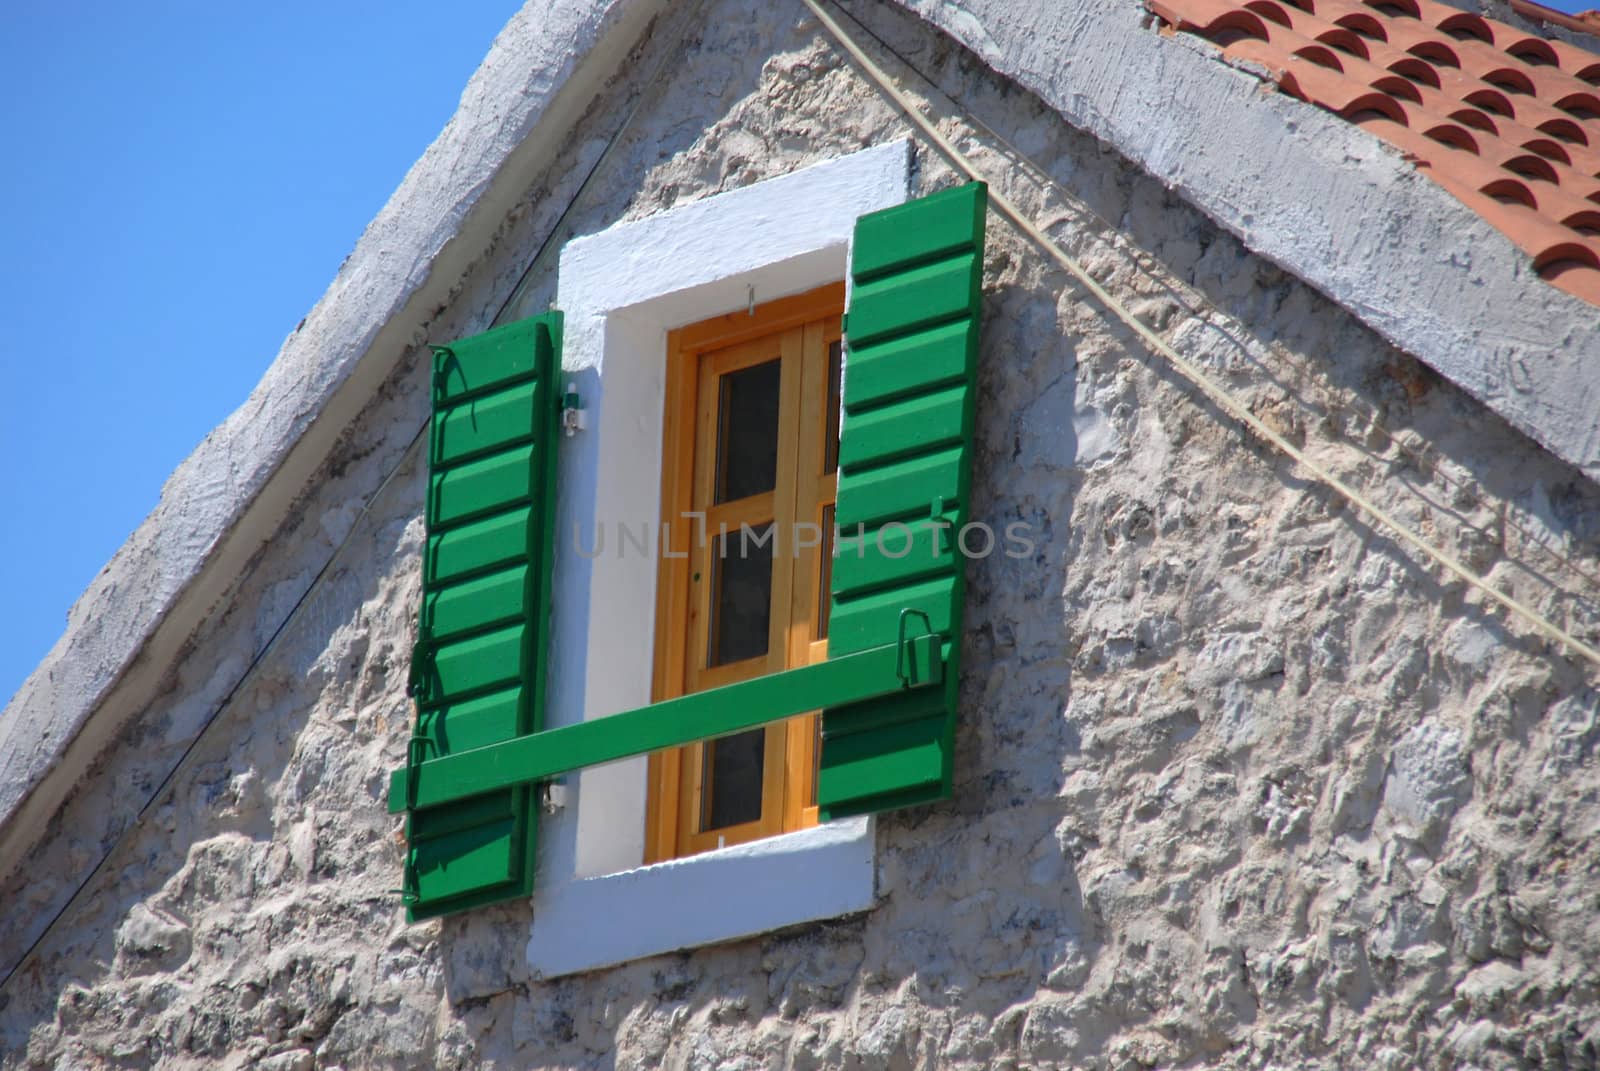 The open green shutter in the window. Croatia. by wojciechkozlowski